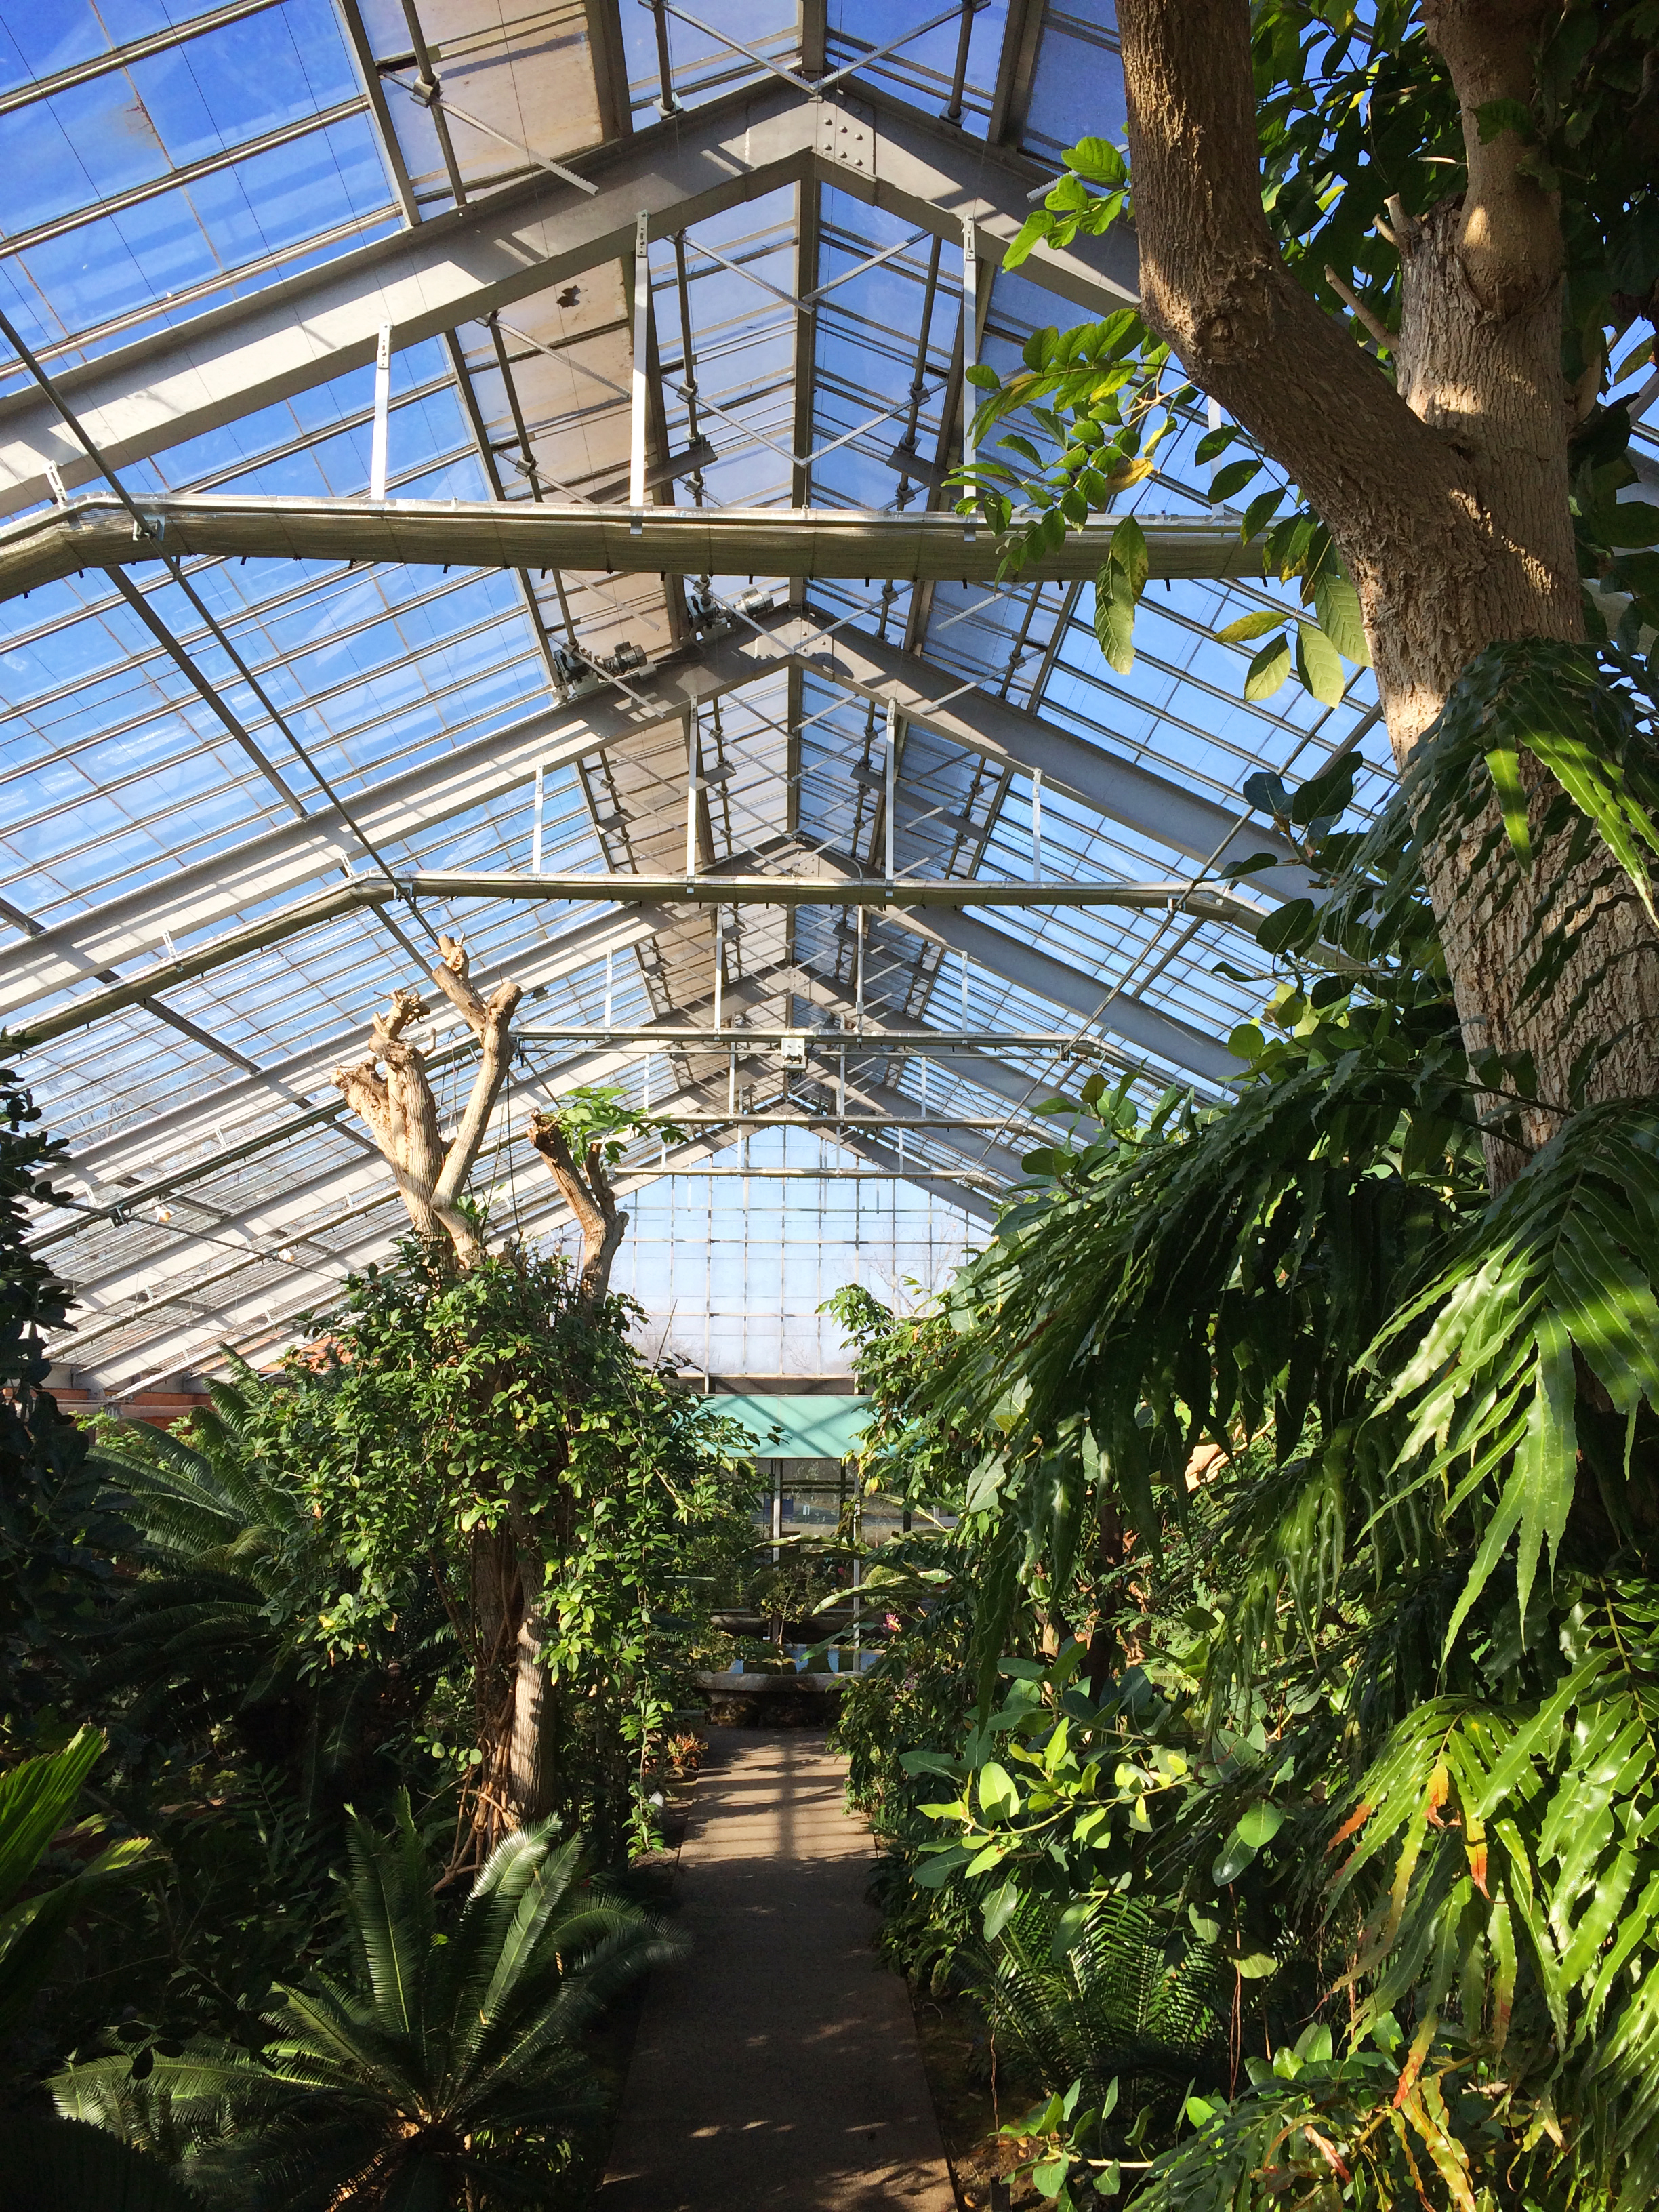 Matthaei Botanical Gardens